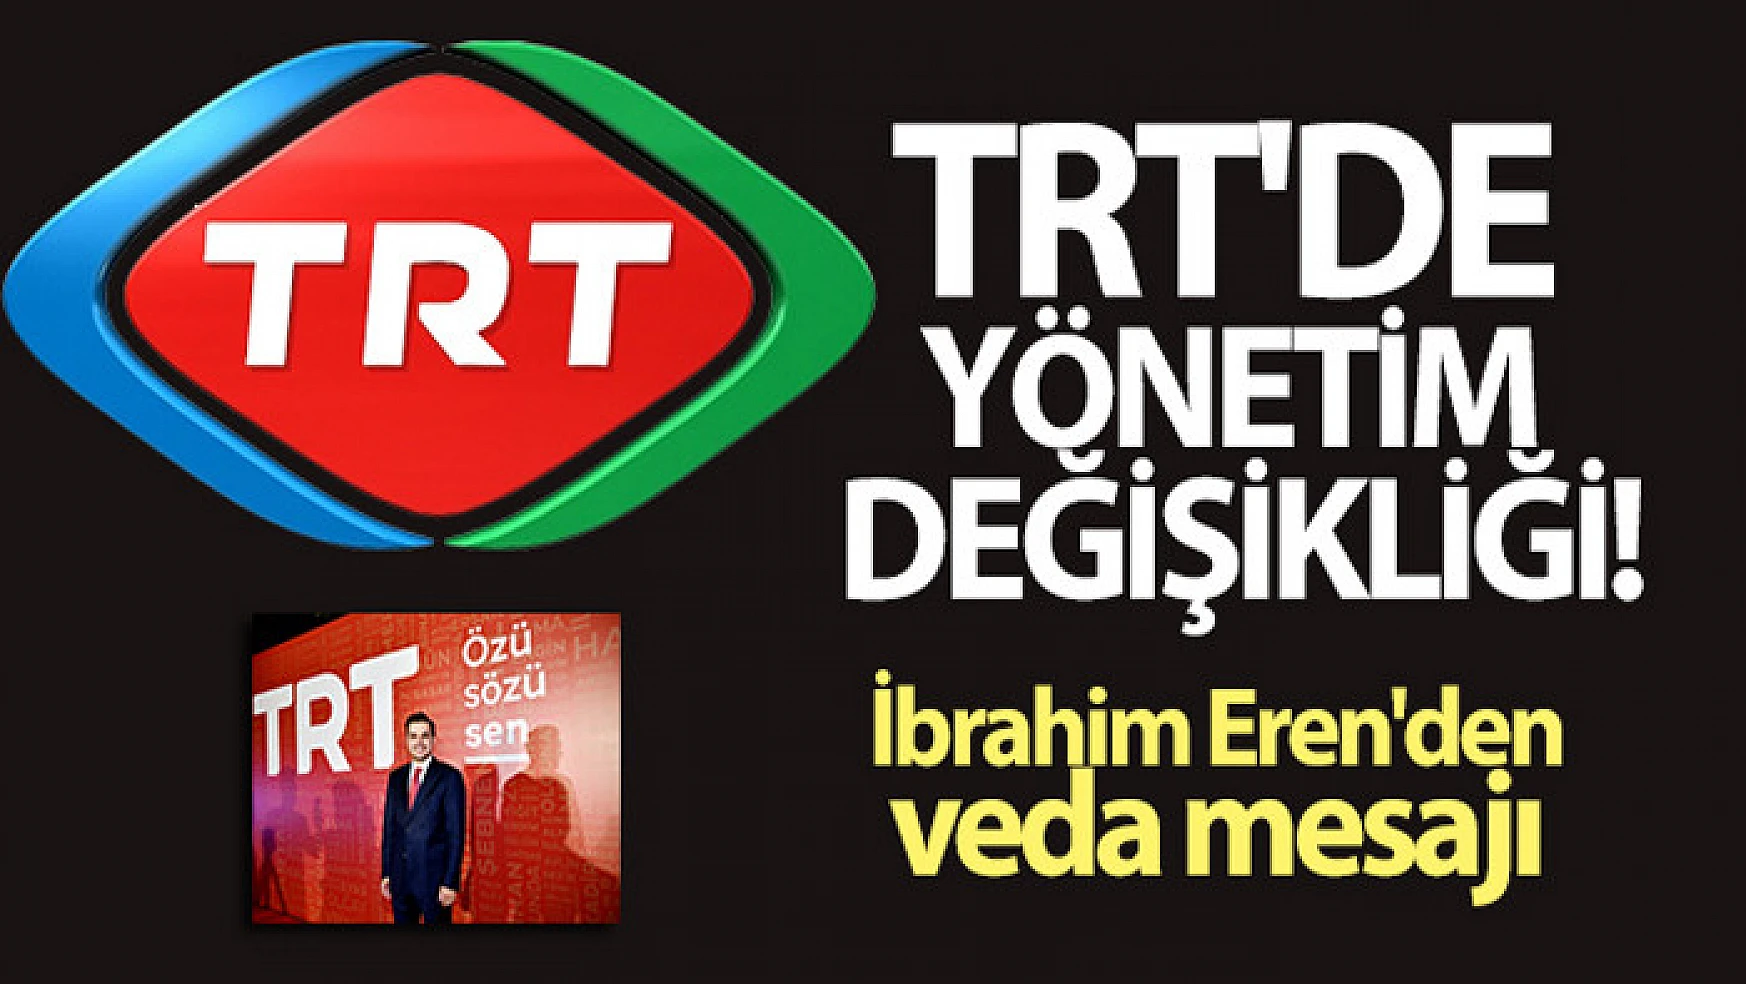 TRT'de yönetim yapısı değişti